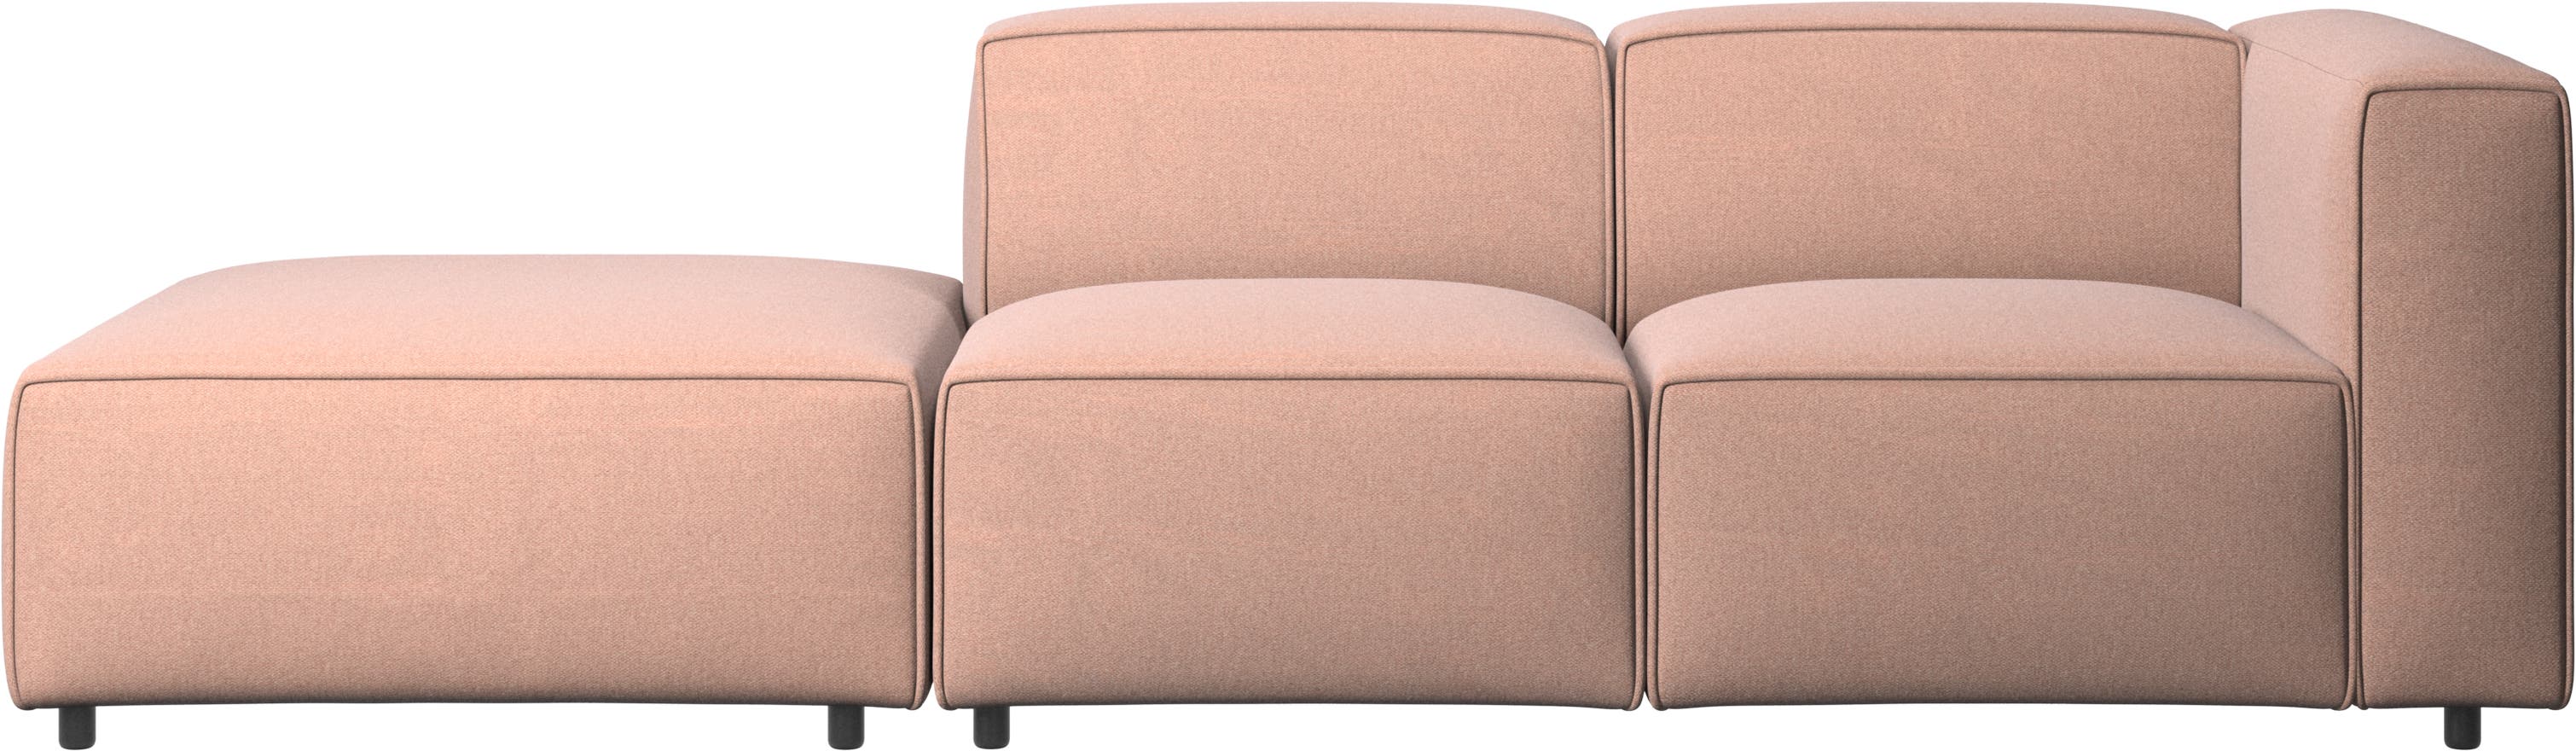 Regulowana sofa Carmo